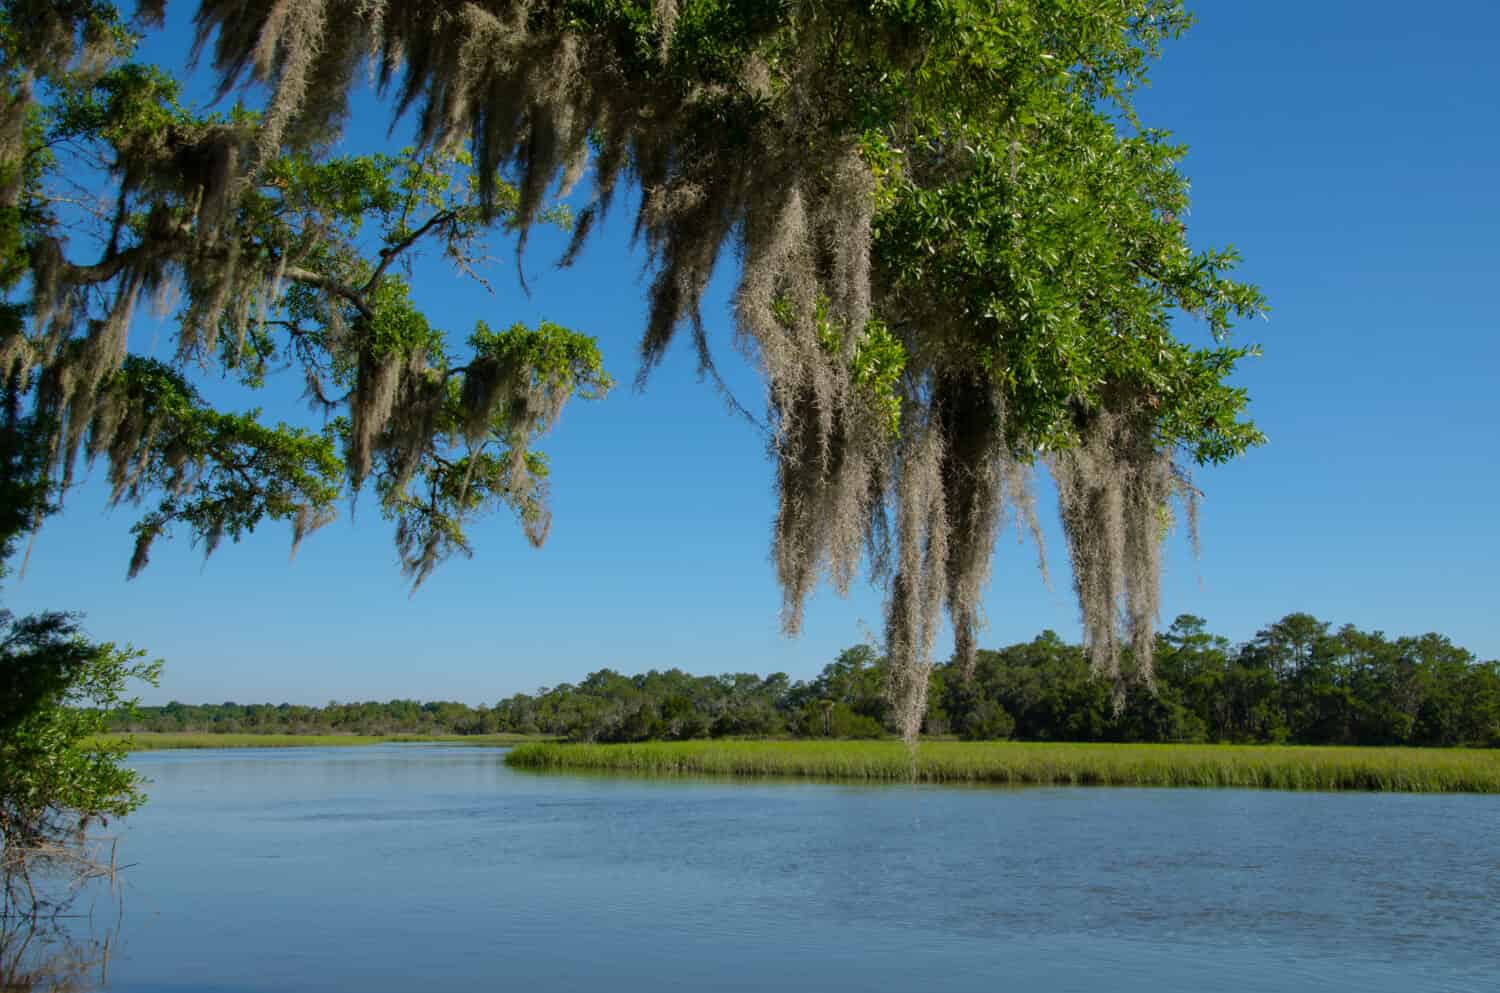 Il muschio ha drappeggiato Live Oak sul fiume Edisto nella piantagione di Botany Bay nella Carolina del Sud